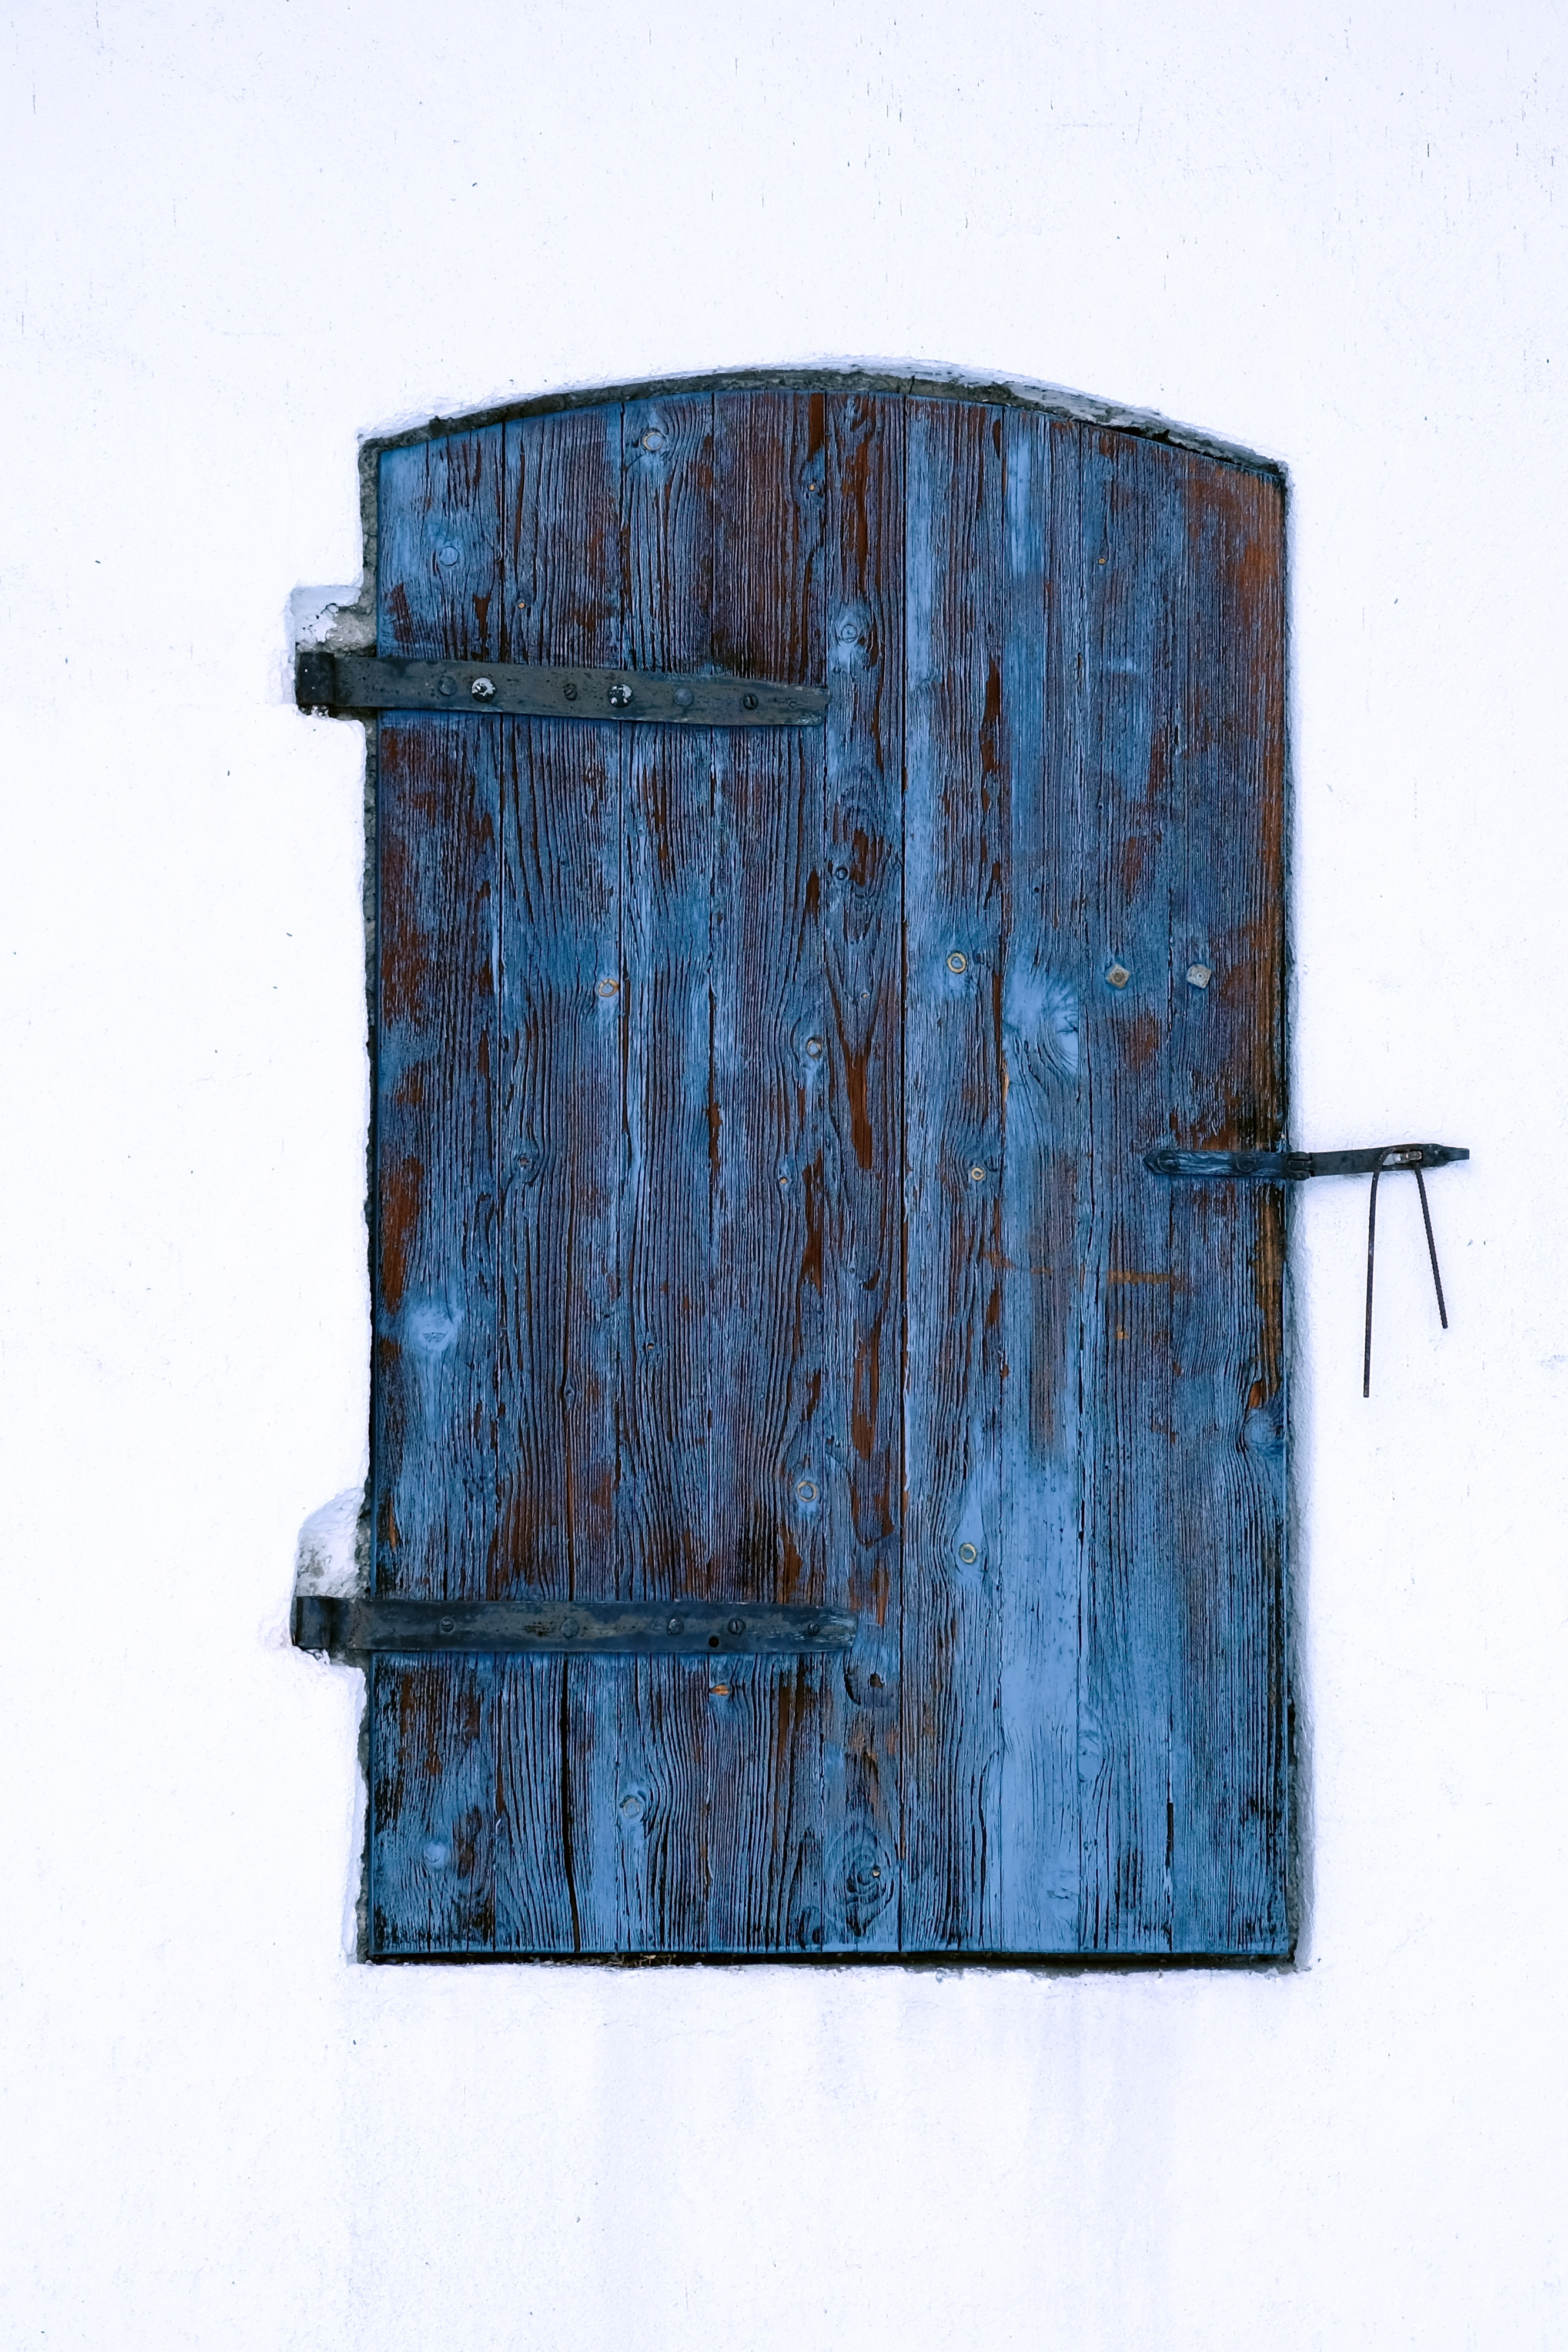 Free Images : wood, wall, blue, gate, door, wooden, modern art, man ...